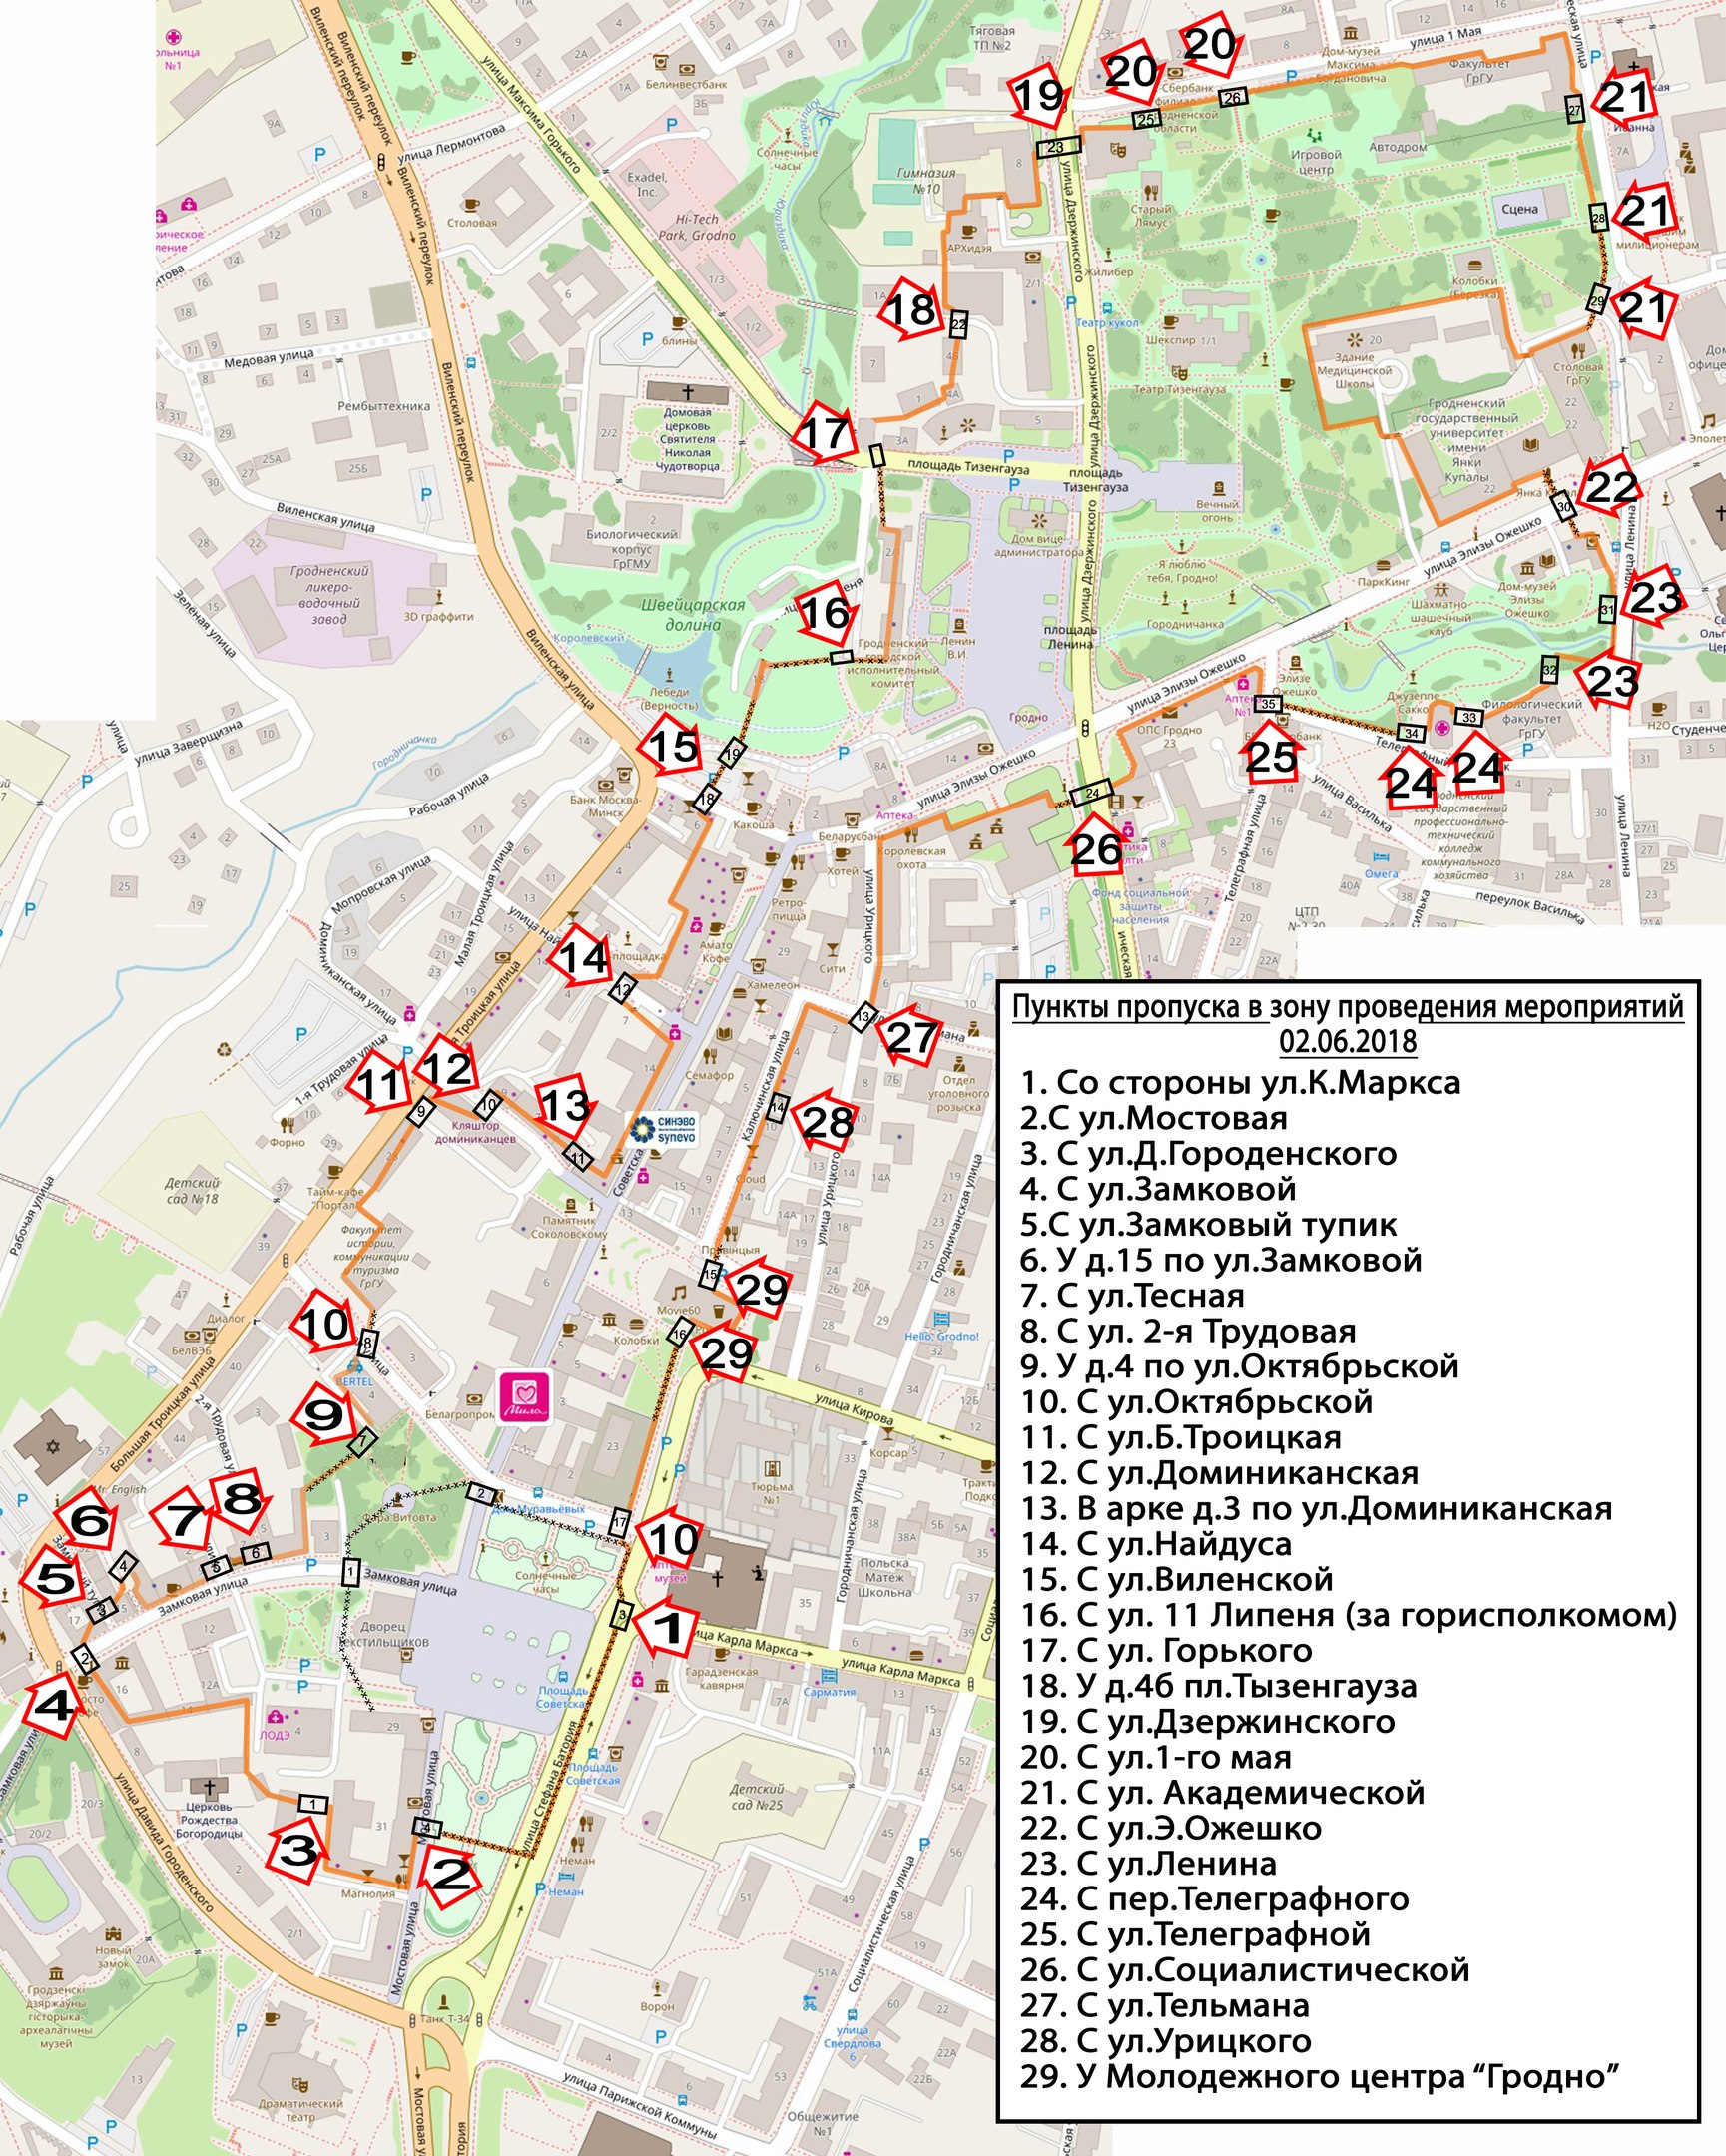 Город гродно на карте. Центр Гродно на карте. Туристическая карта Гродно. Карта центр города Гродно. Гродно туристическая карта города.